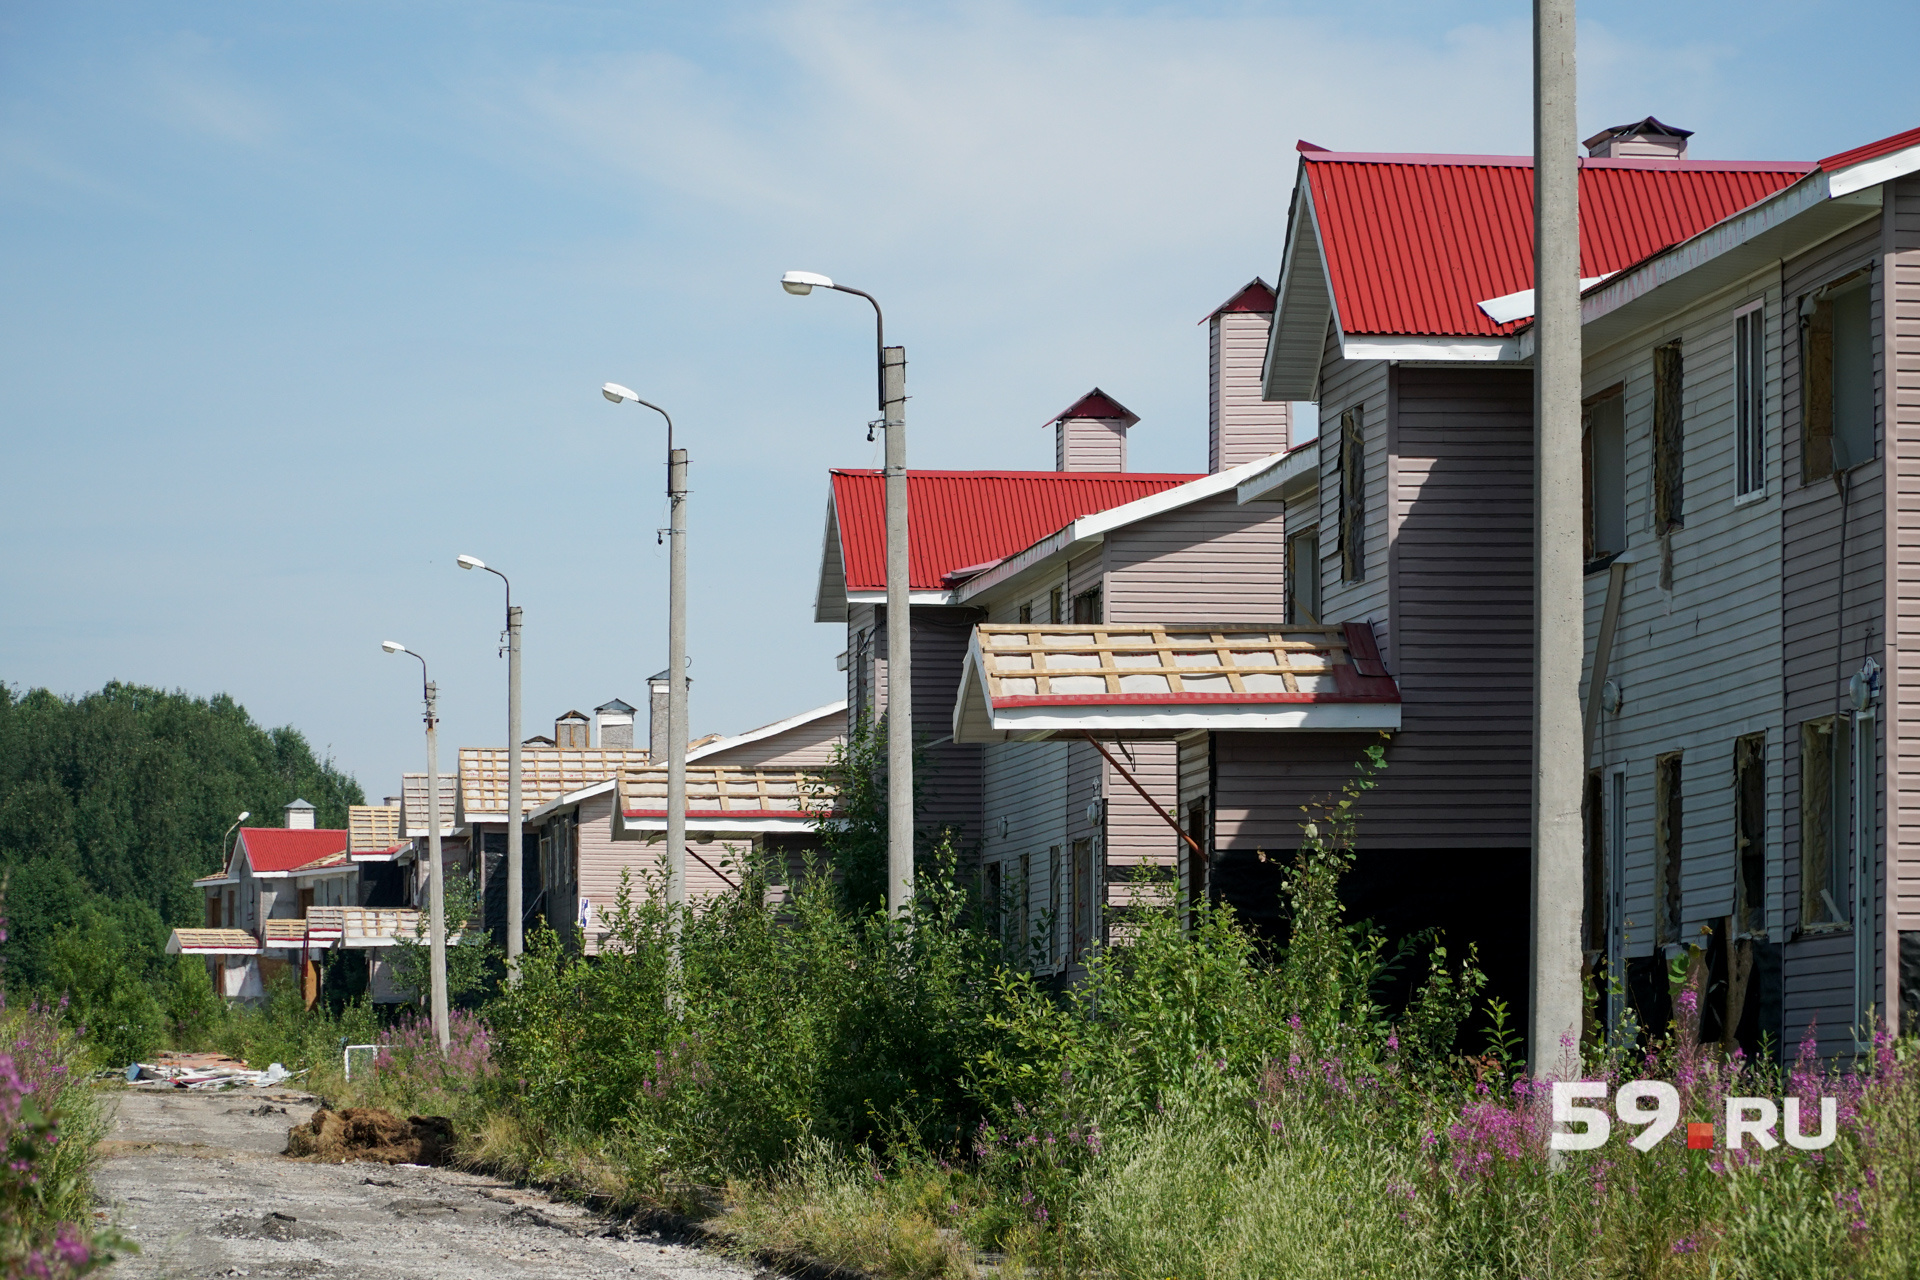 Жильцы Любимова признались, что заброшенные формальдегидные дома производят на них неприятное впечатление — эти пустые кварталы похожи на вымерший город